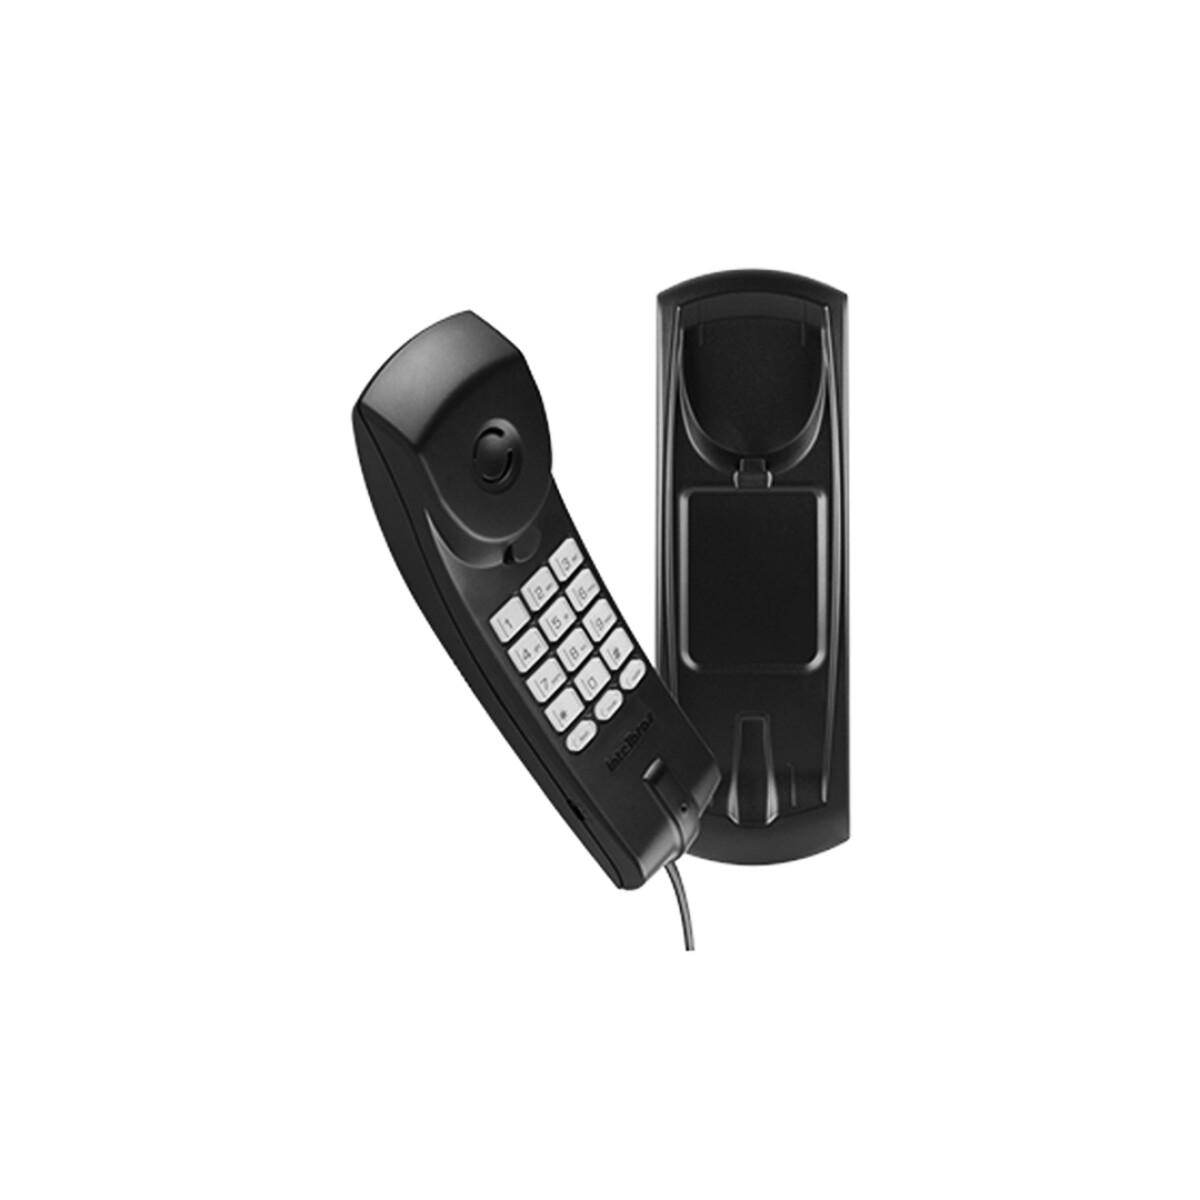 Teléfono Básico con cable TC20 Intelbras - Negro 